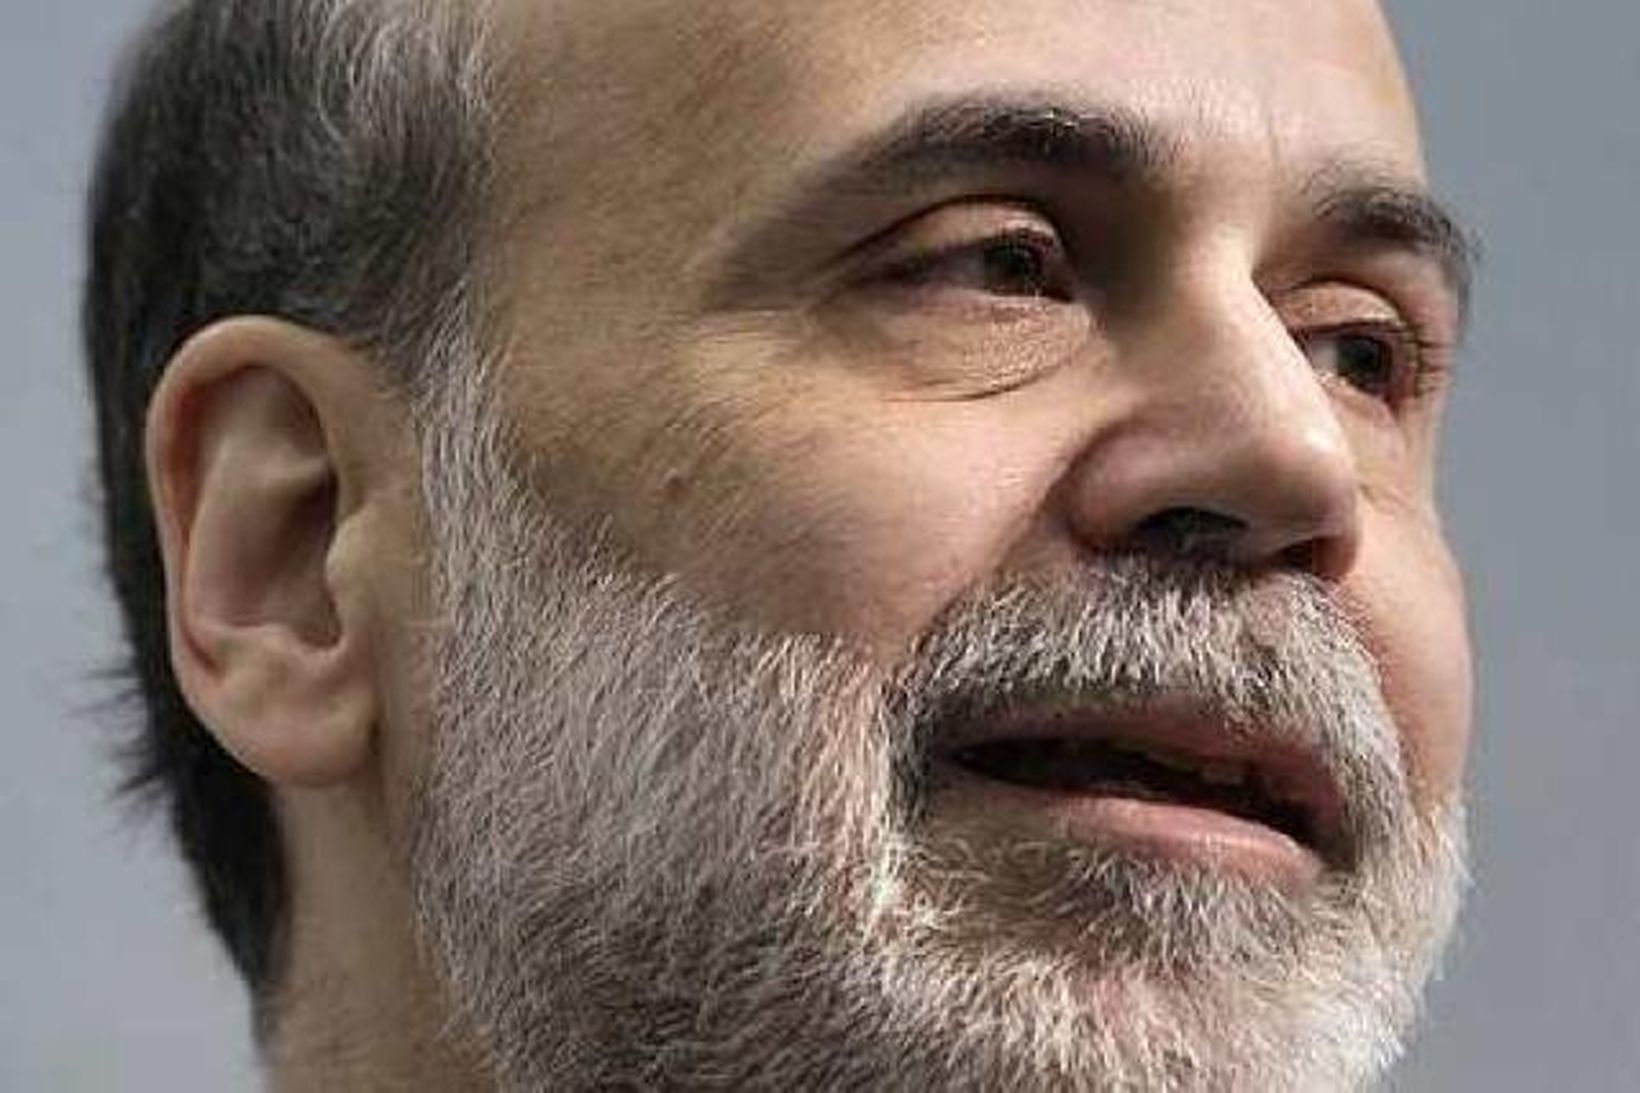 Ben Bernanke.